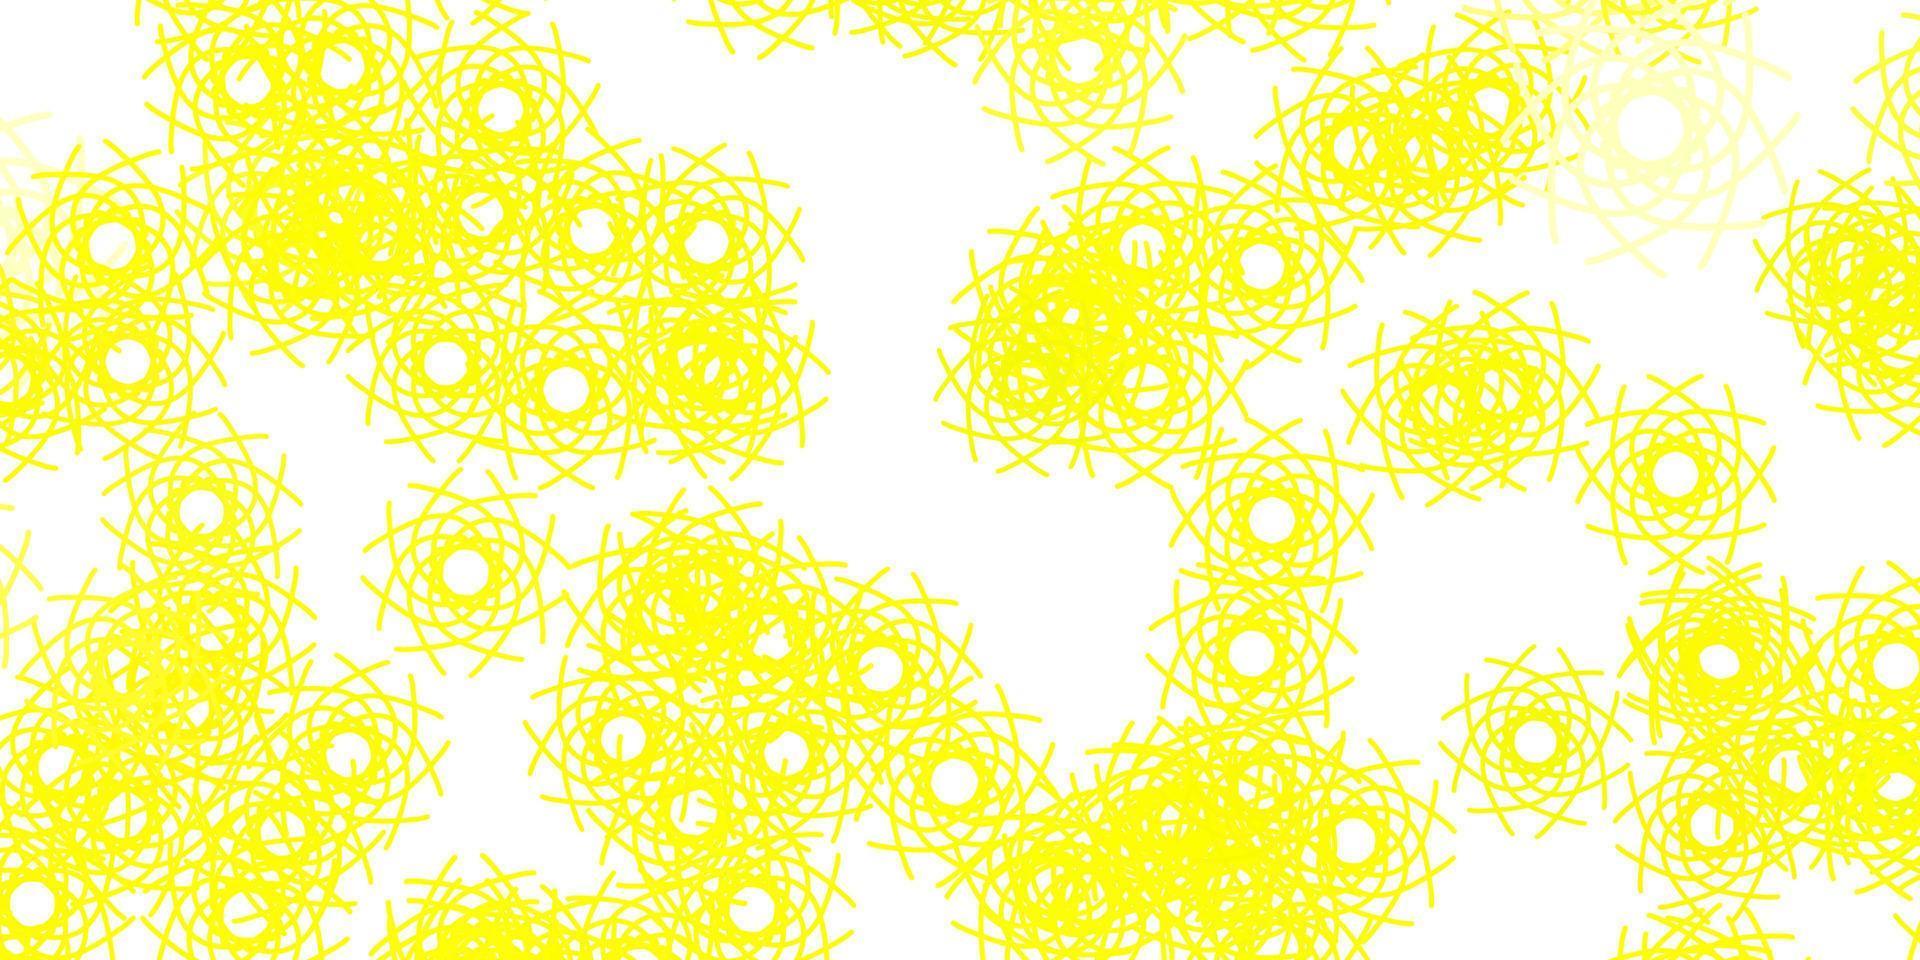 textura de vetor amarelo claro com formas de memphis.